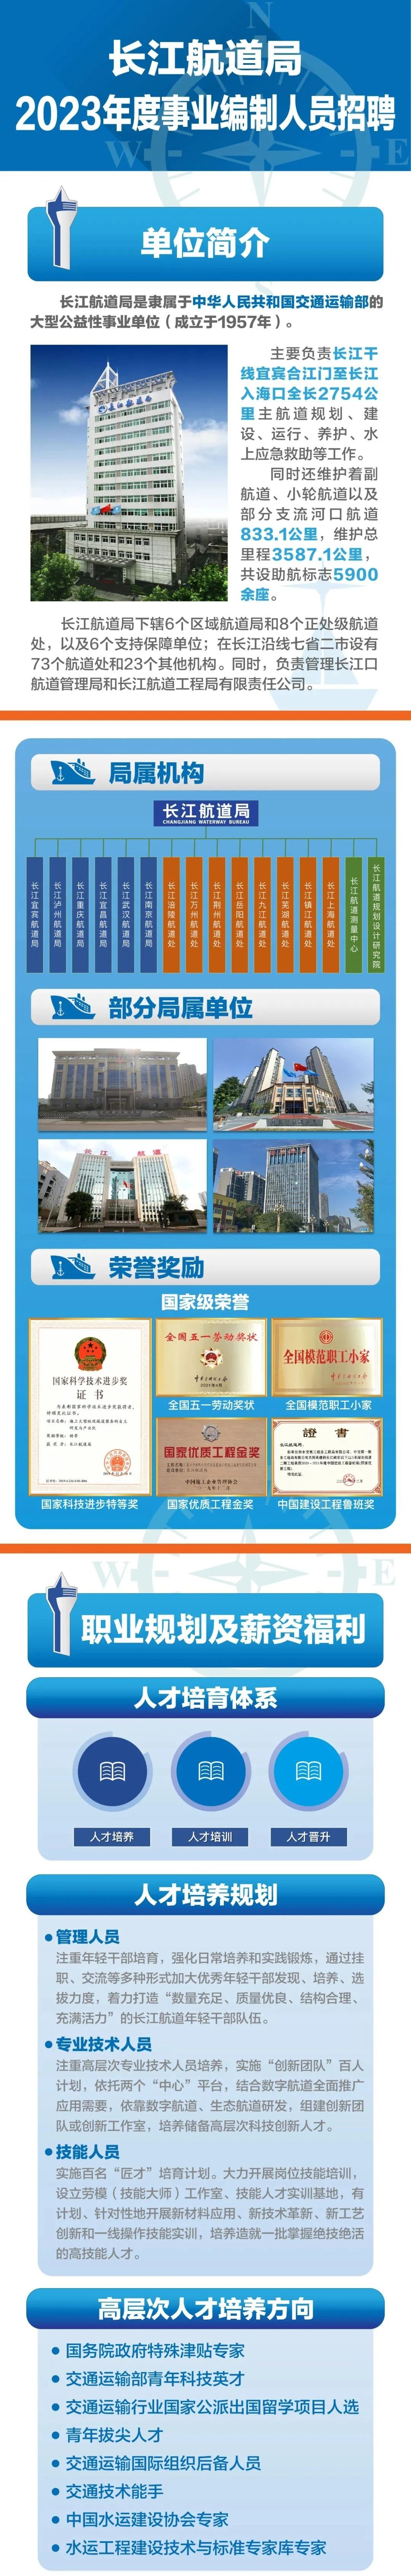 【湖北|武汉】2023年长江航道局招聘169名事业编制人员公告 - 知乎